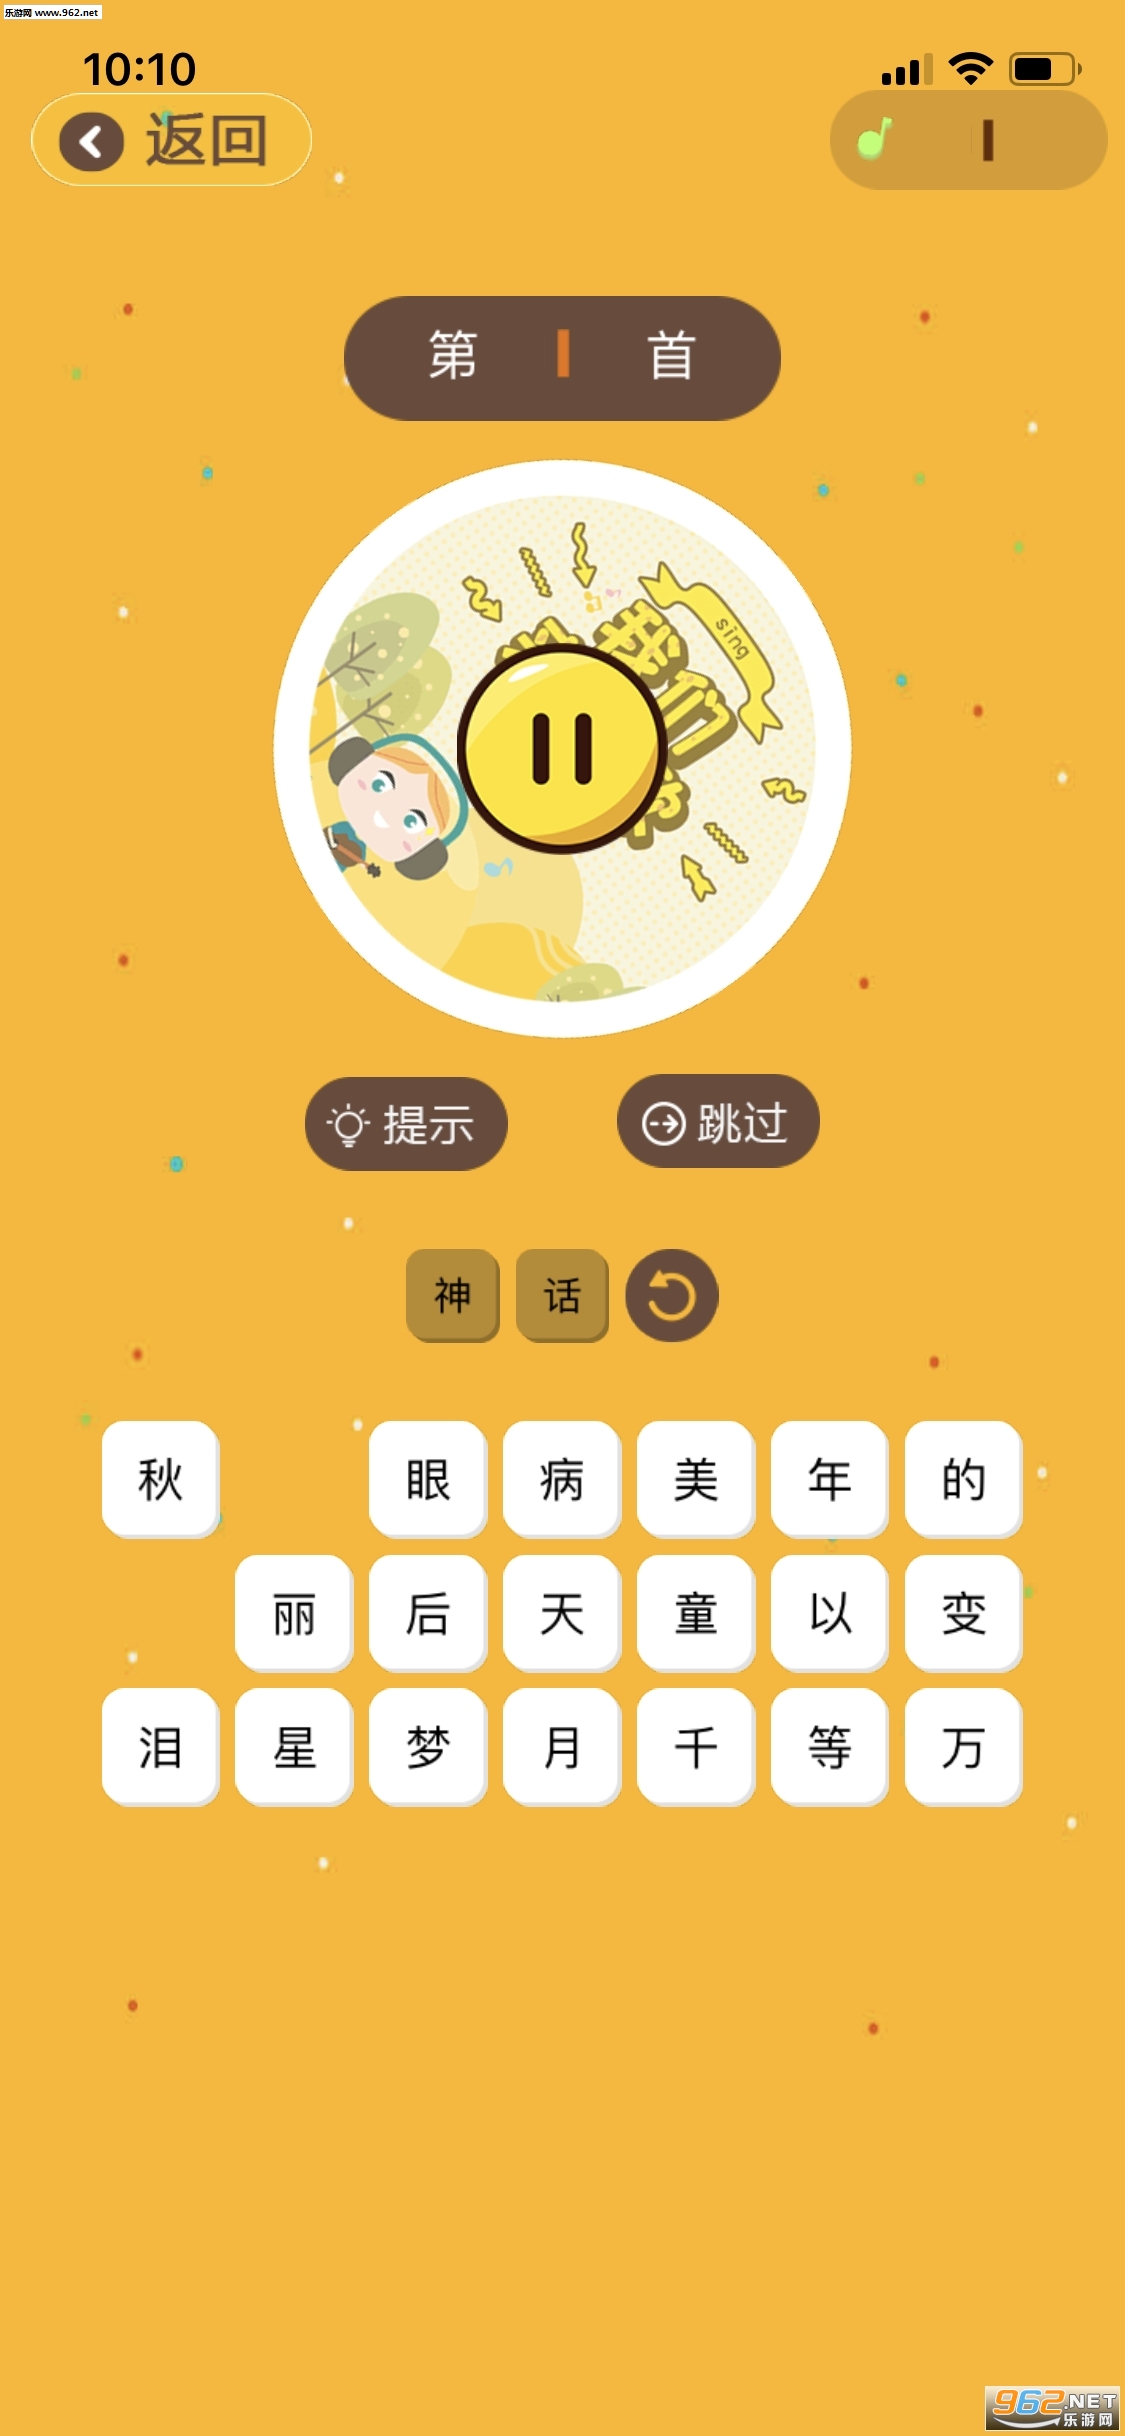 猜歌名来挑战答案_猜歌名来挑战答案中文版下载_猜歌名来挑战答案app下载